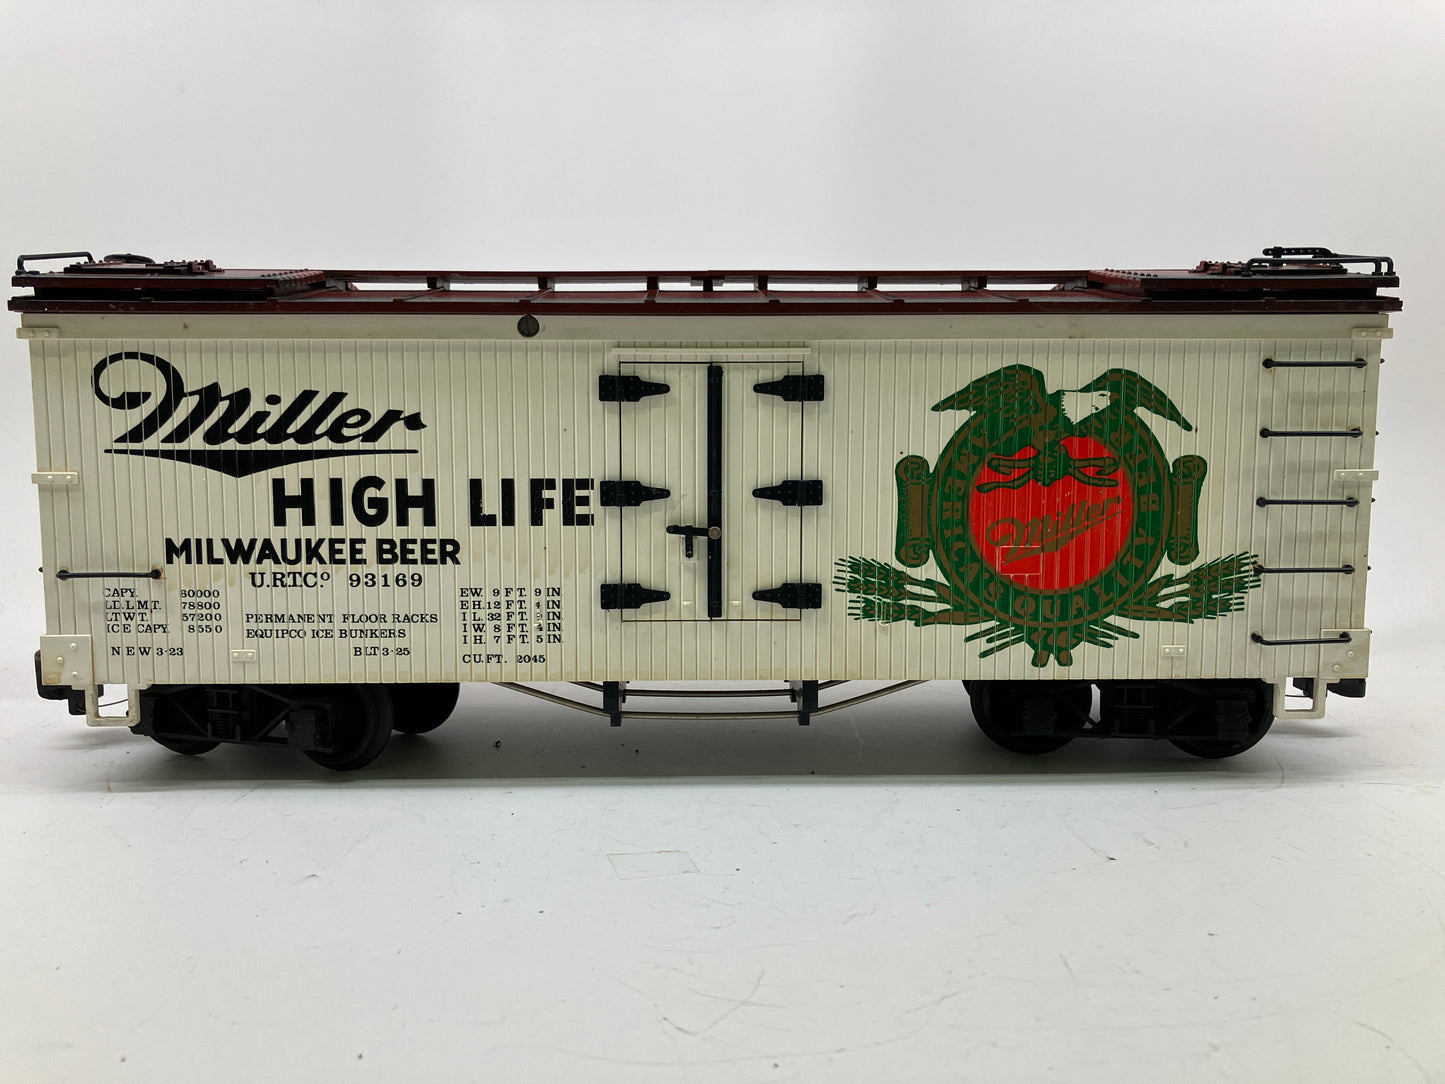 LGB #4072 MILLER HIGH LIFE REEFER CAR,G SCALE MODEL TRAIN BOXCAR